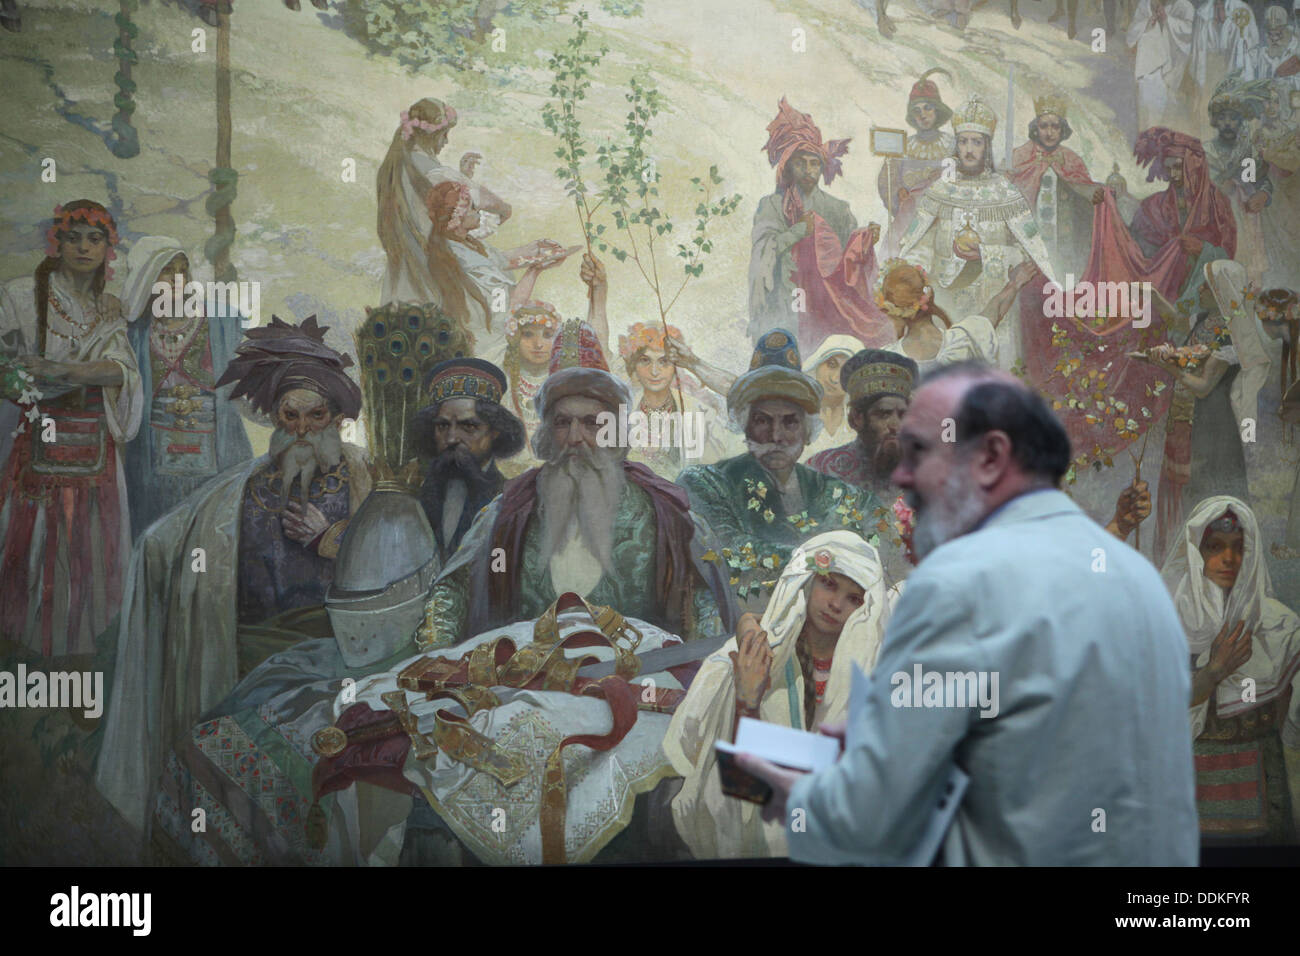 Gemälde "Die Krönung des serbischen Zaren Stefan Dusan" aus dem Zyklus "Das Slawische Epos" gemalt von Alfons Mucha. Stockfoto